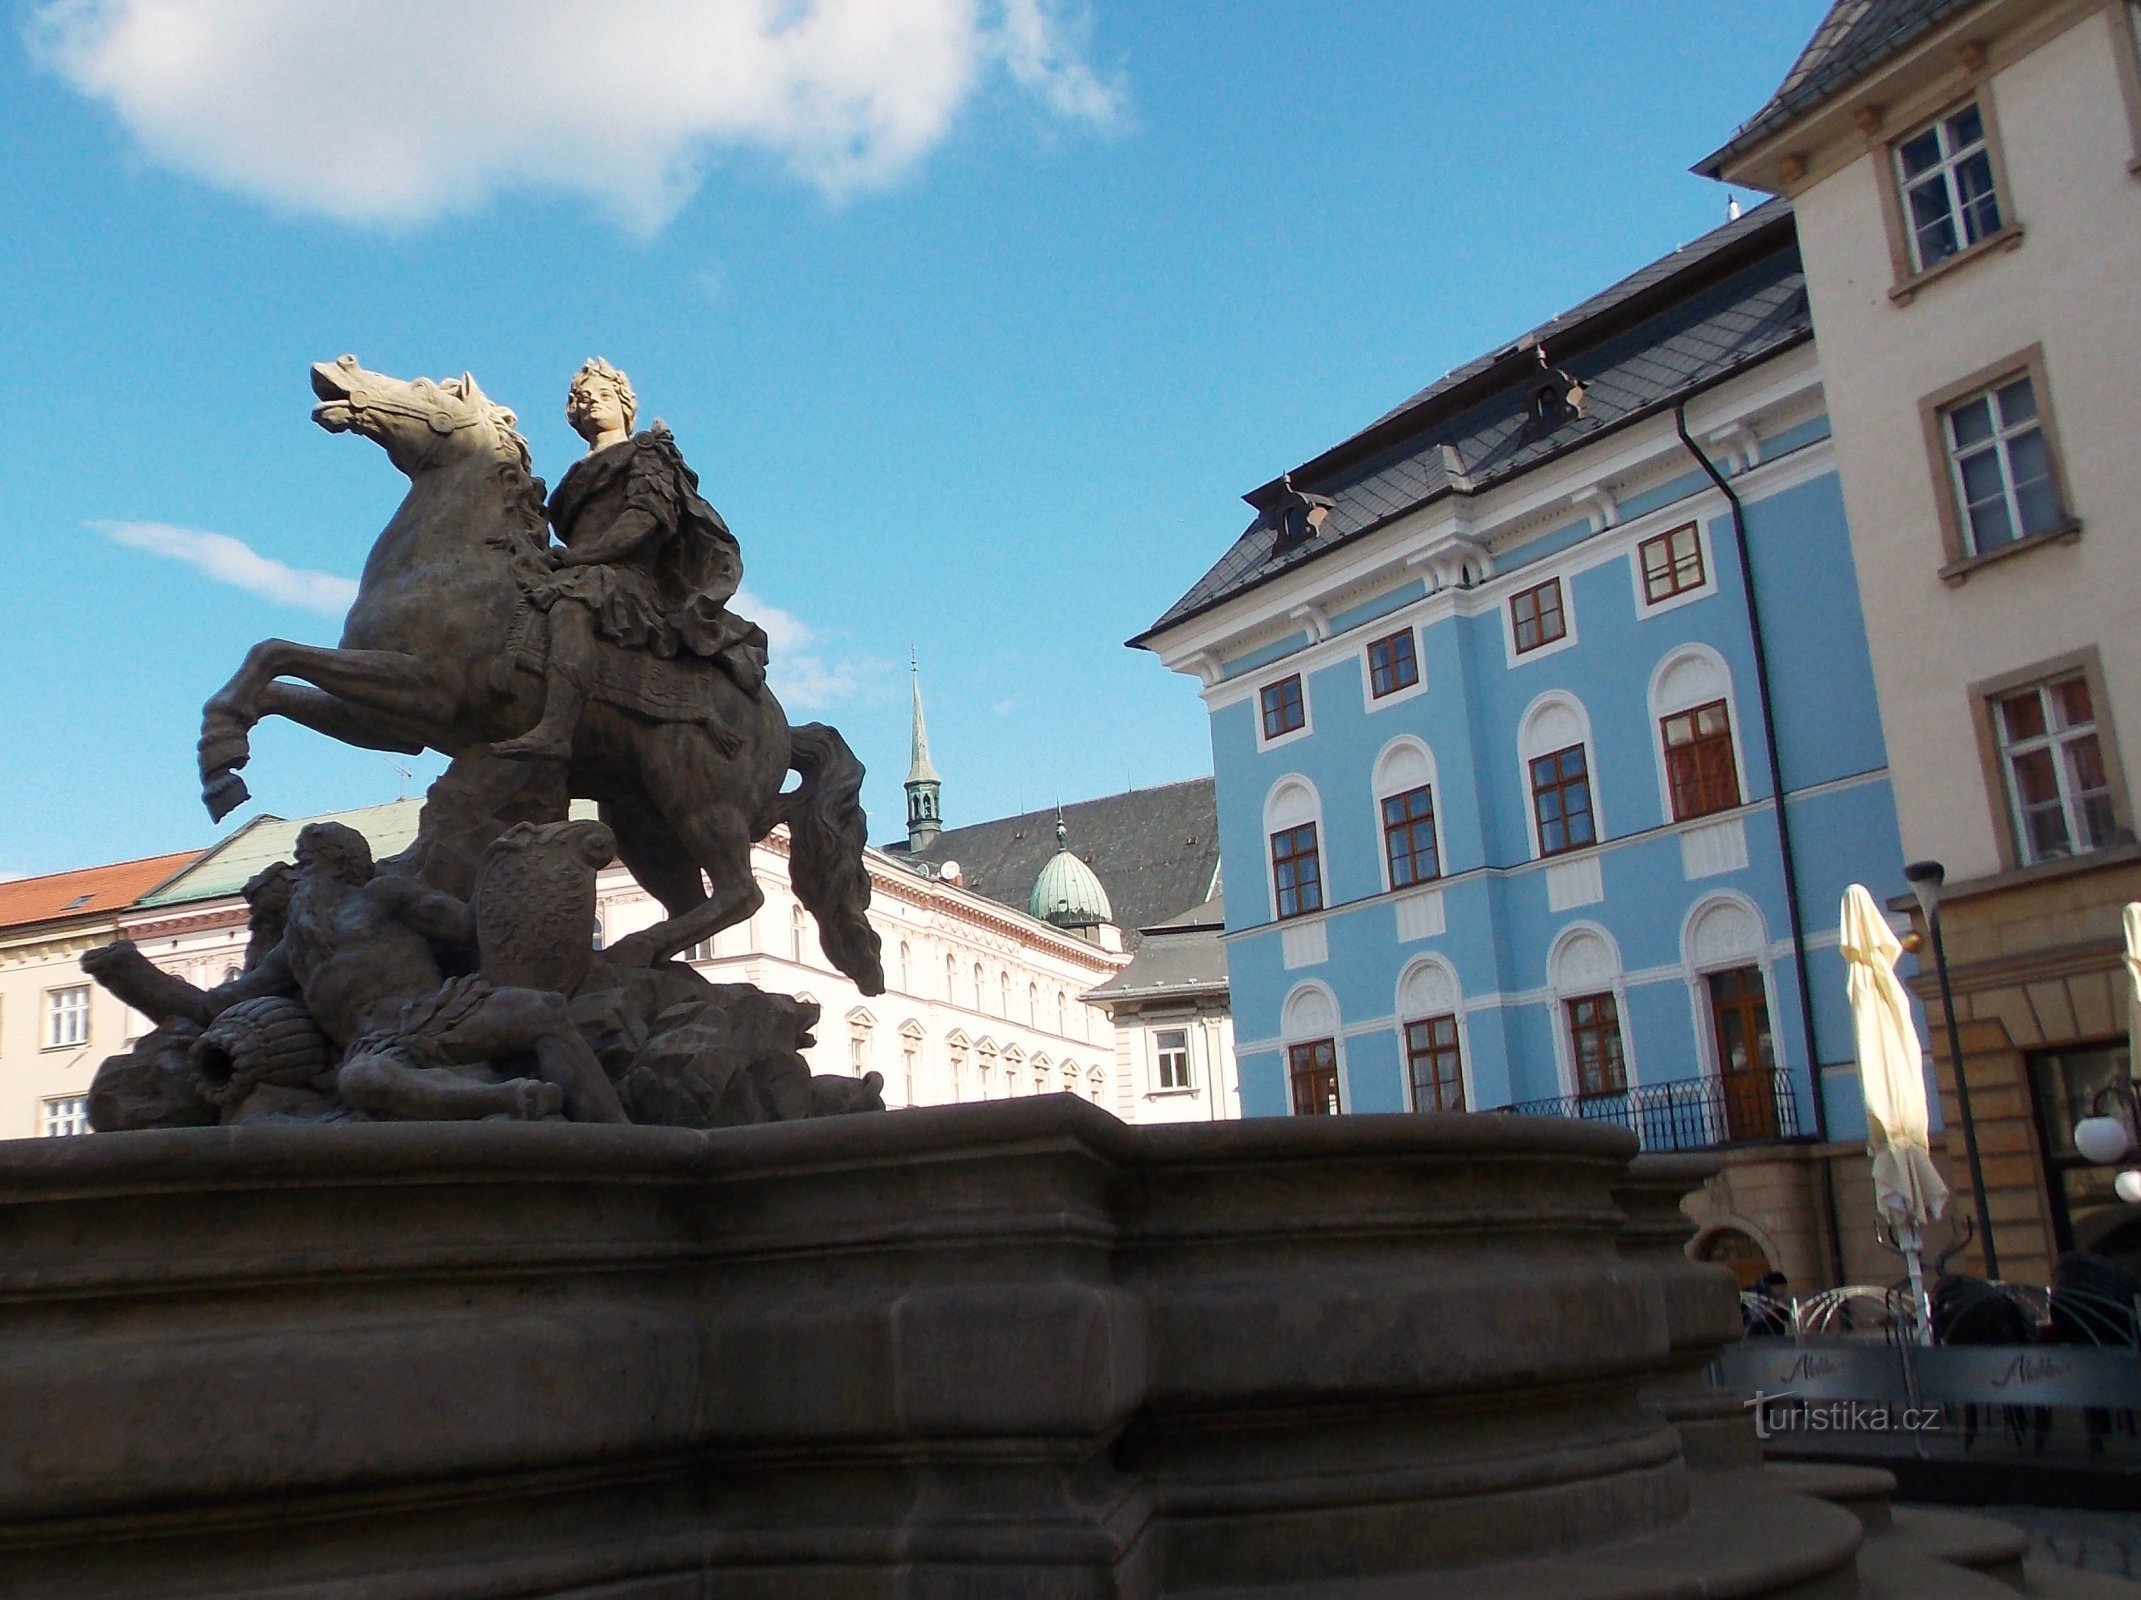 Intressant plats på Horní náměstí i Olomouc